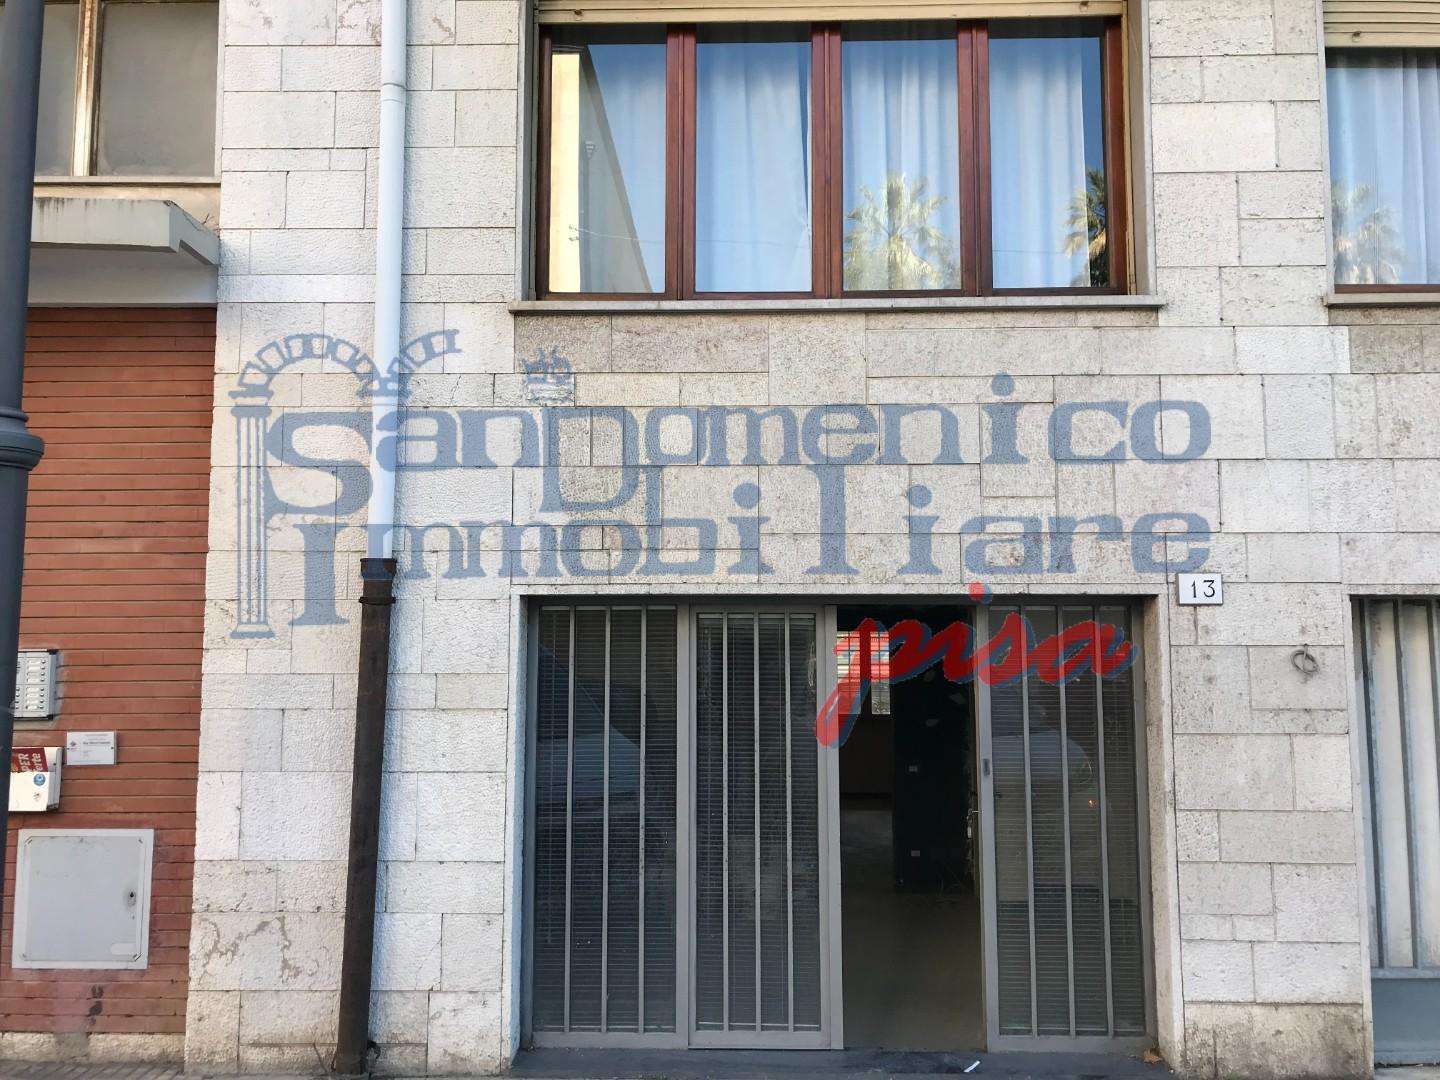 Locale commerciale in Affitto a Pisa Via Giovanni Maria Lavagna, 28